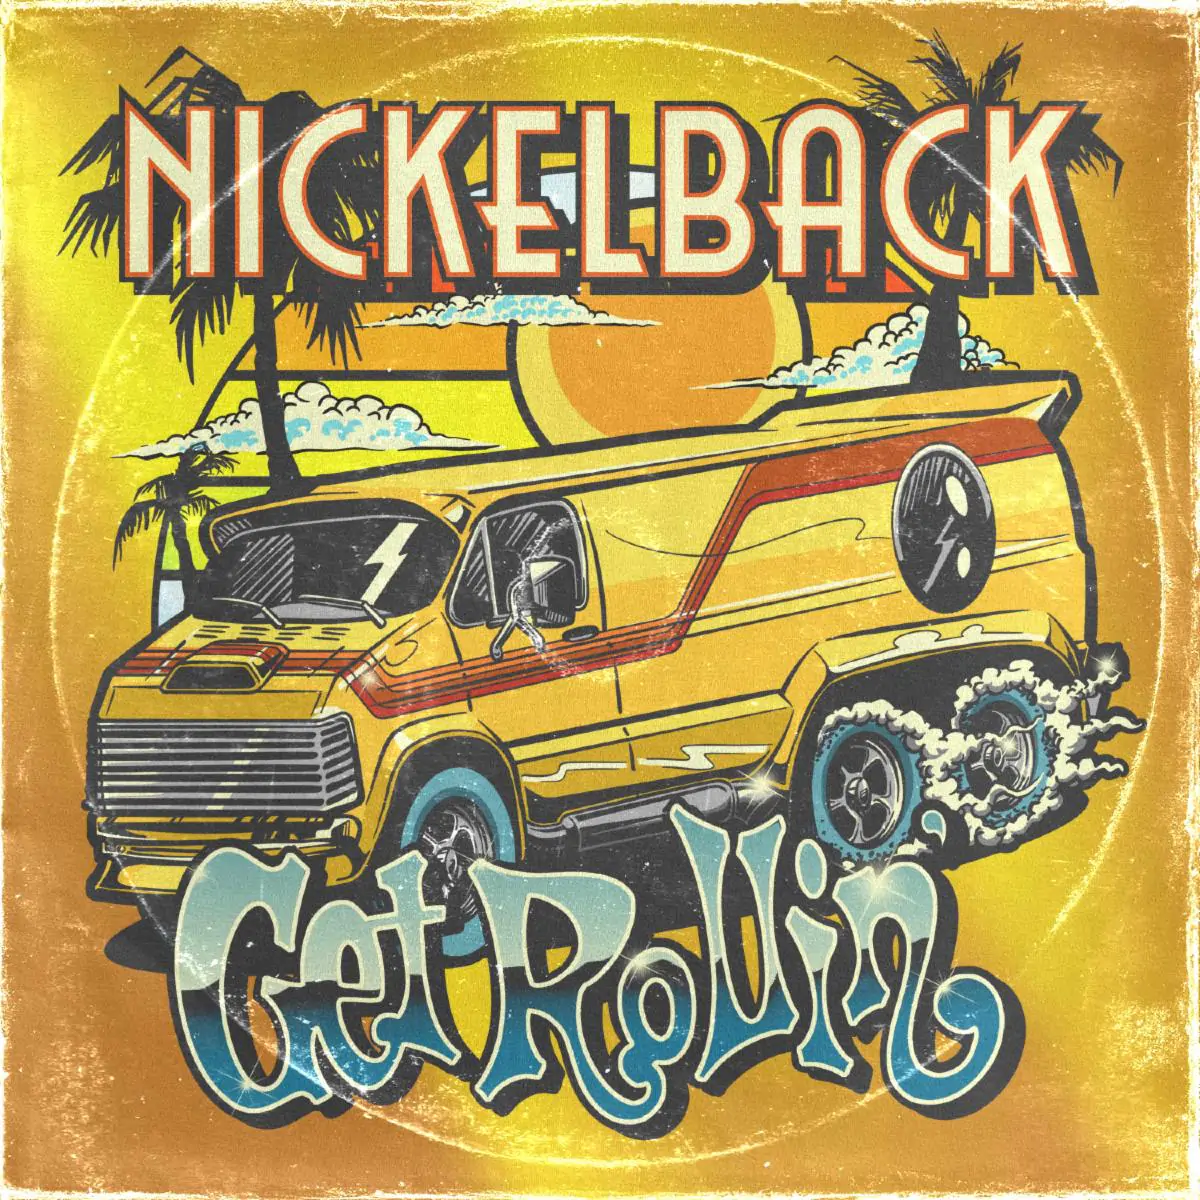 ALBUM REVIEW: Nickelback – Get Rollin’